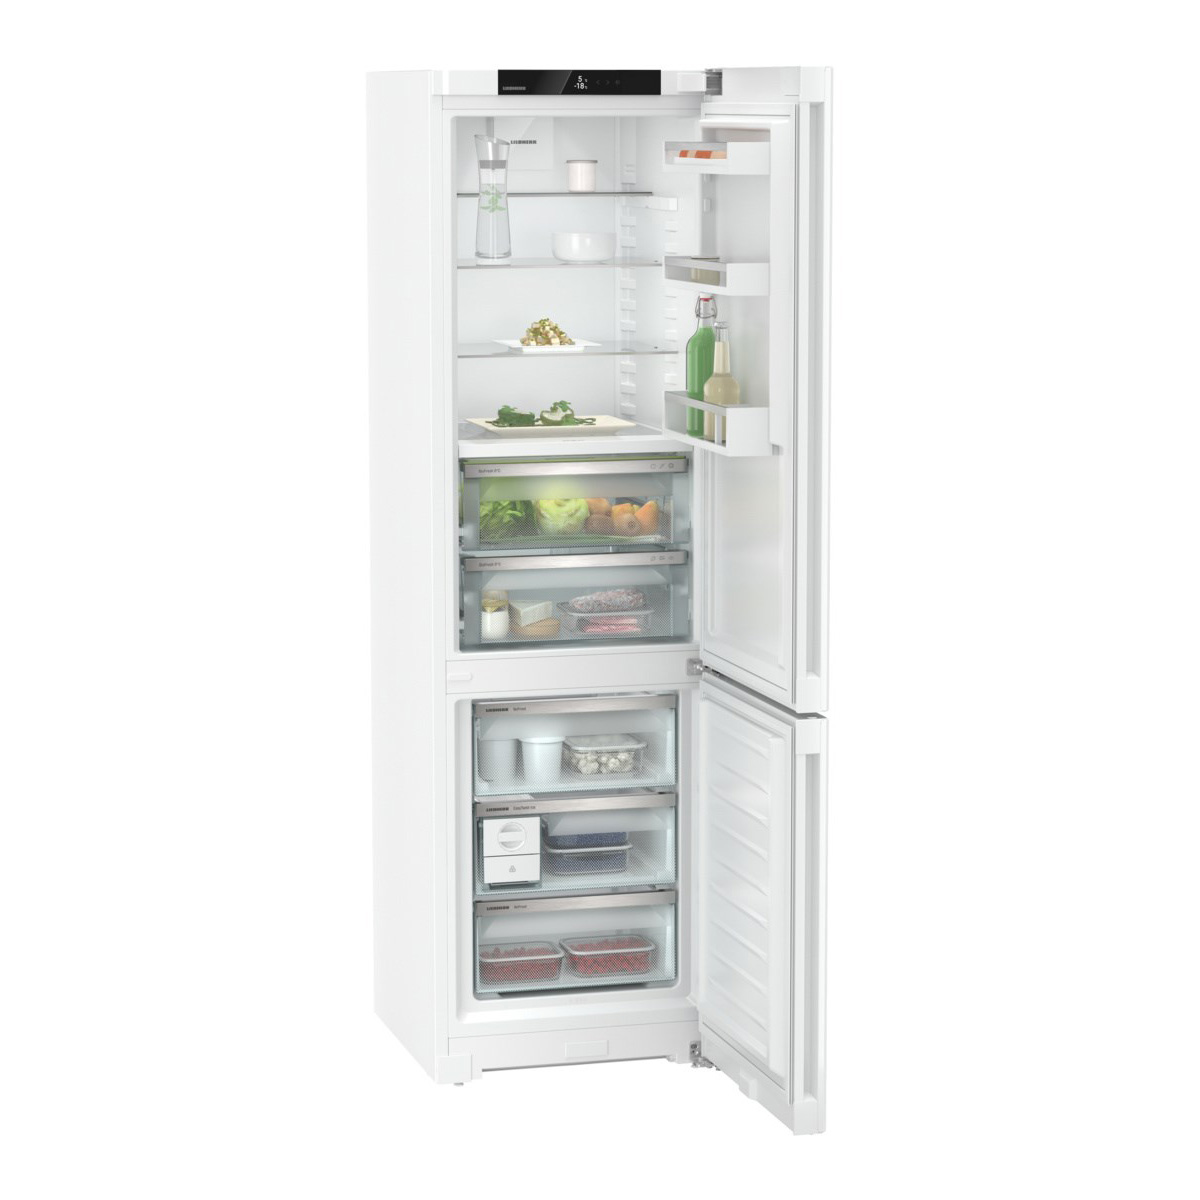 Холодильник Liebherr CBNd 5723 BioFresh (Plus / Объем - 349 л / Высота - 201,5см / A++ / Белый / No Frost / DuoCooling / DrySafe)